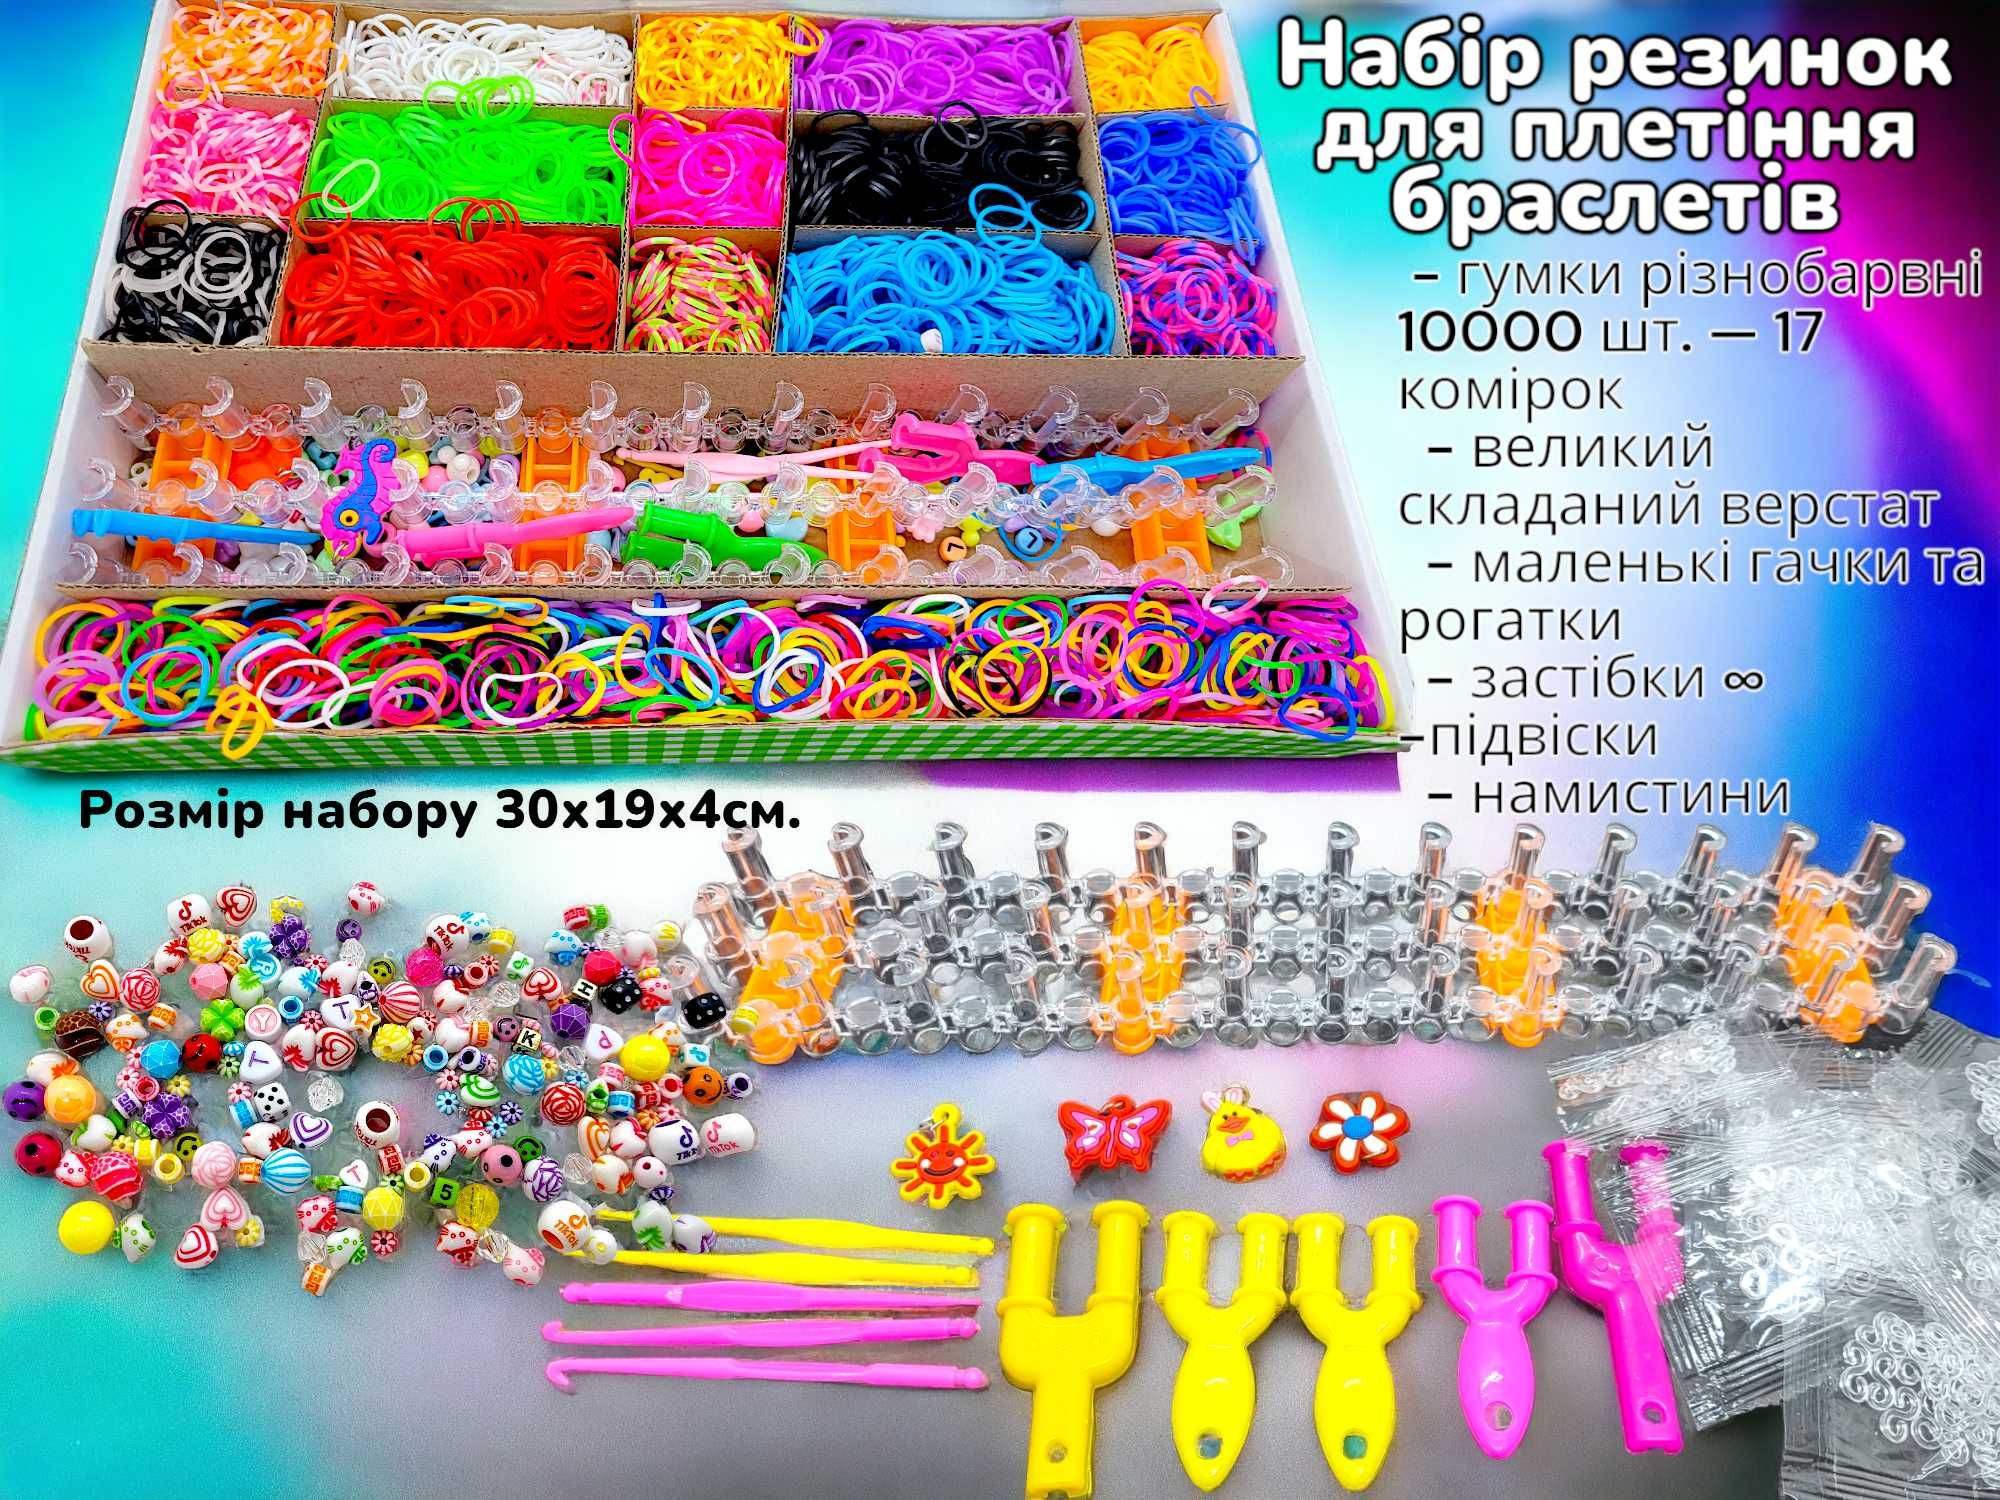 Набор для плетения браслетов из резинок Fashion loom bands 10000шт!